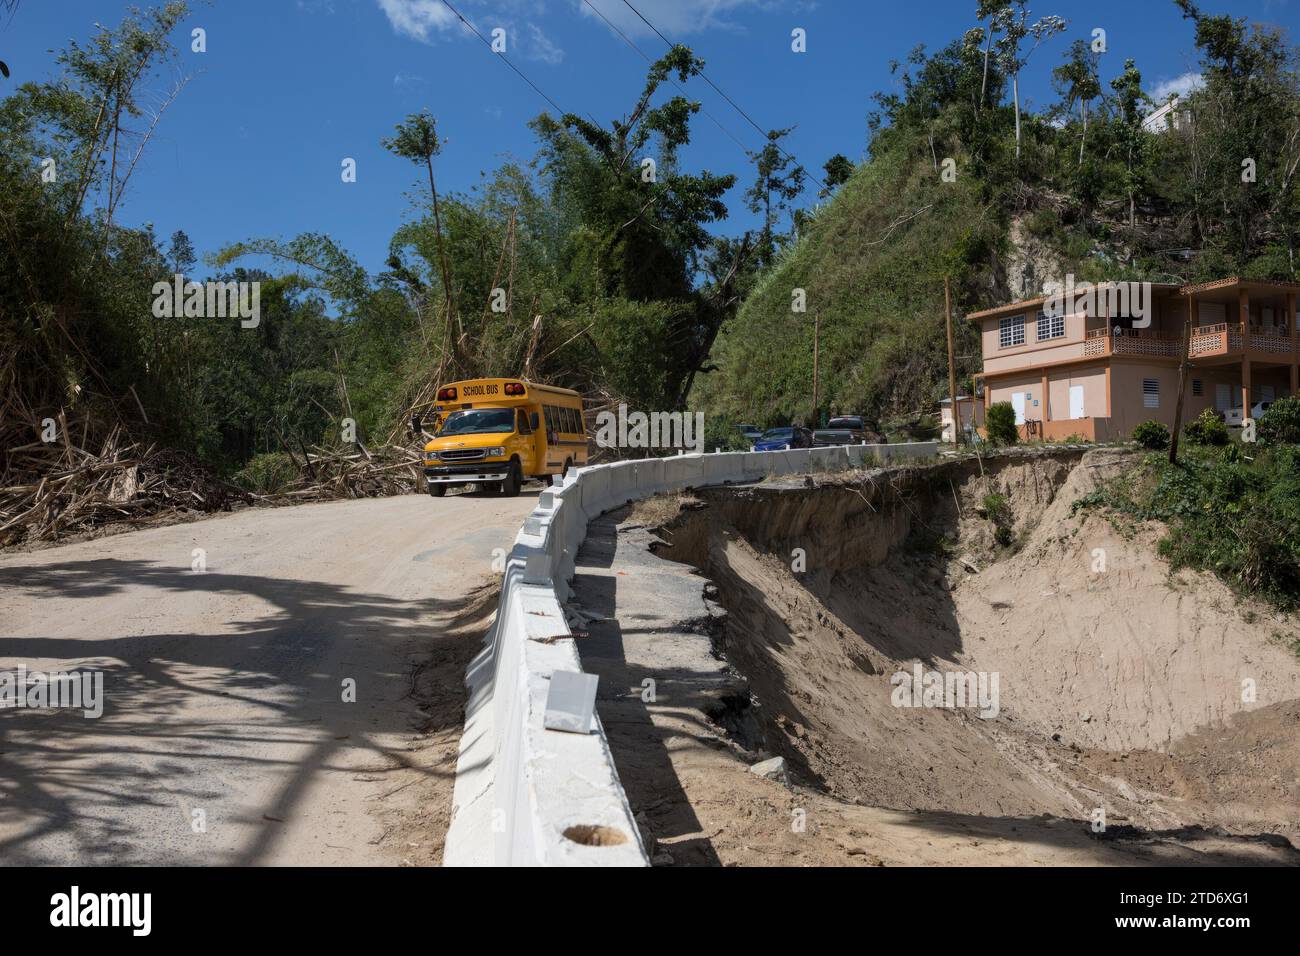 Puerto Rico, 03/16/2018. Report after Hurricane Maria. Photo: Rob Zambrano. Archdc. Credit: Album / Archivo ABC / Rob Zambrano Stock Photo